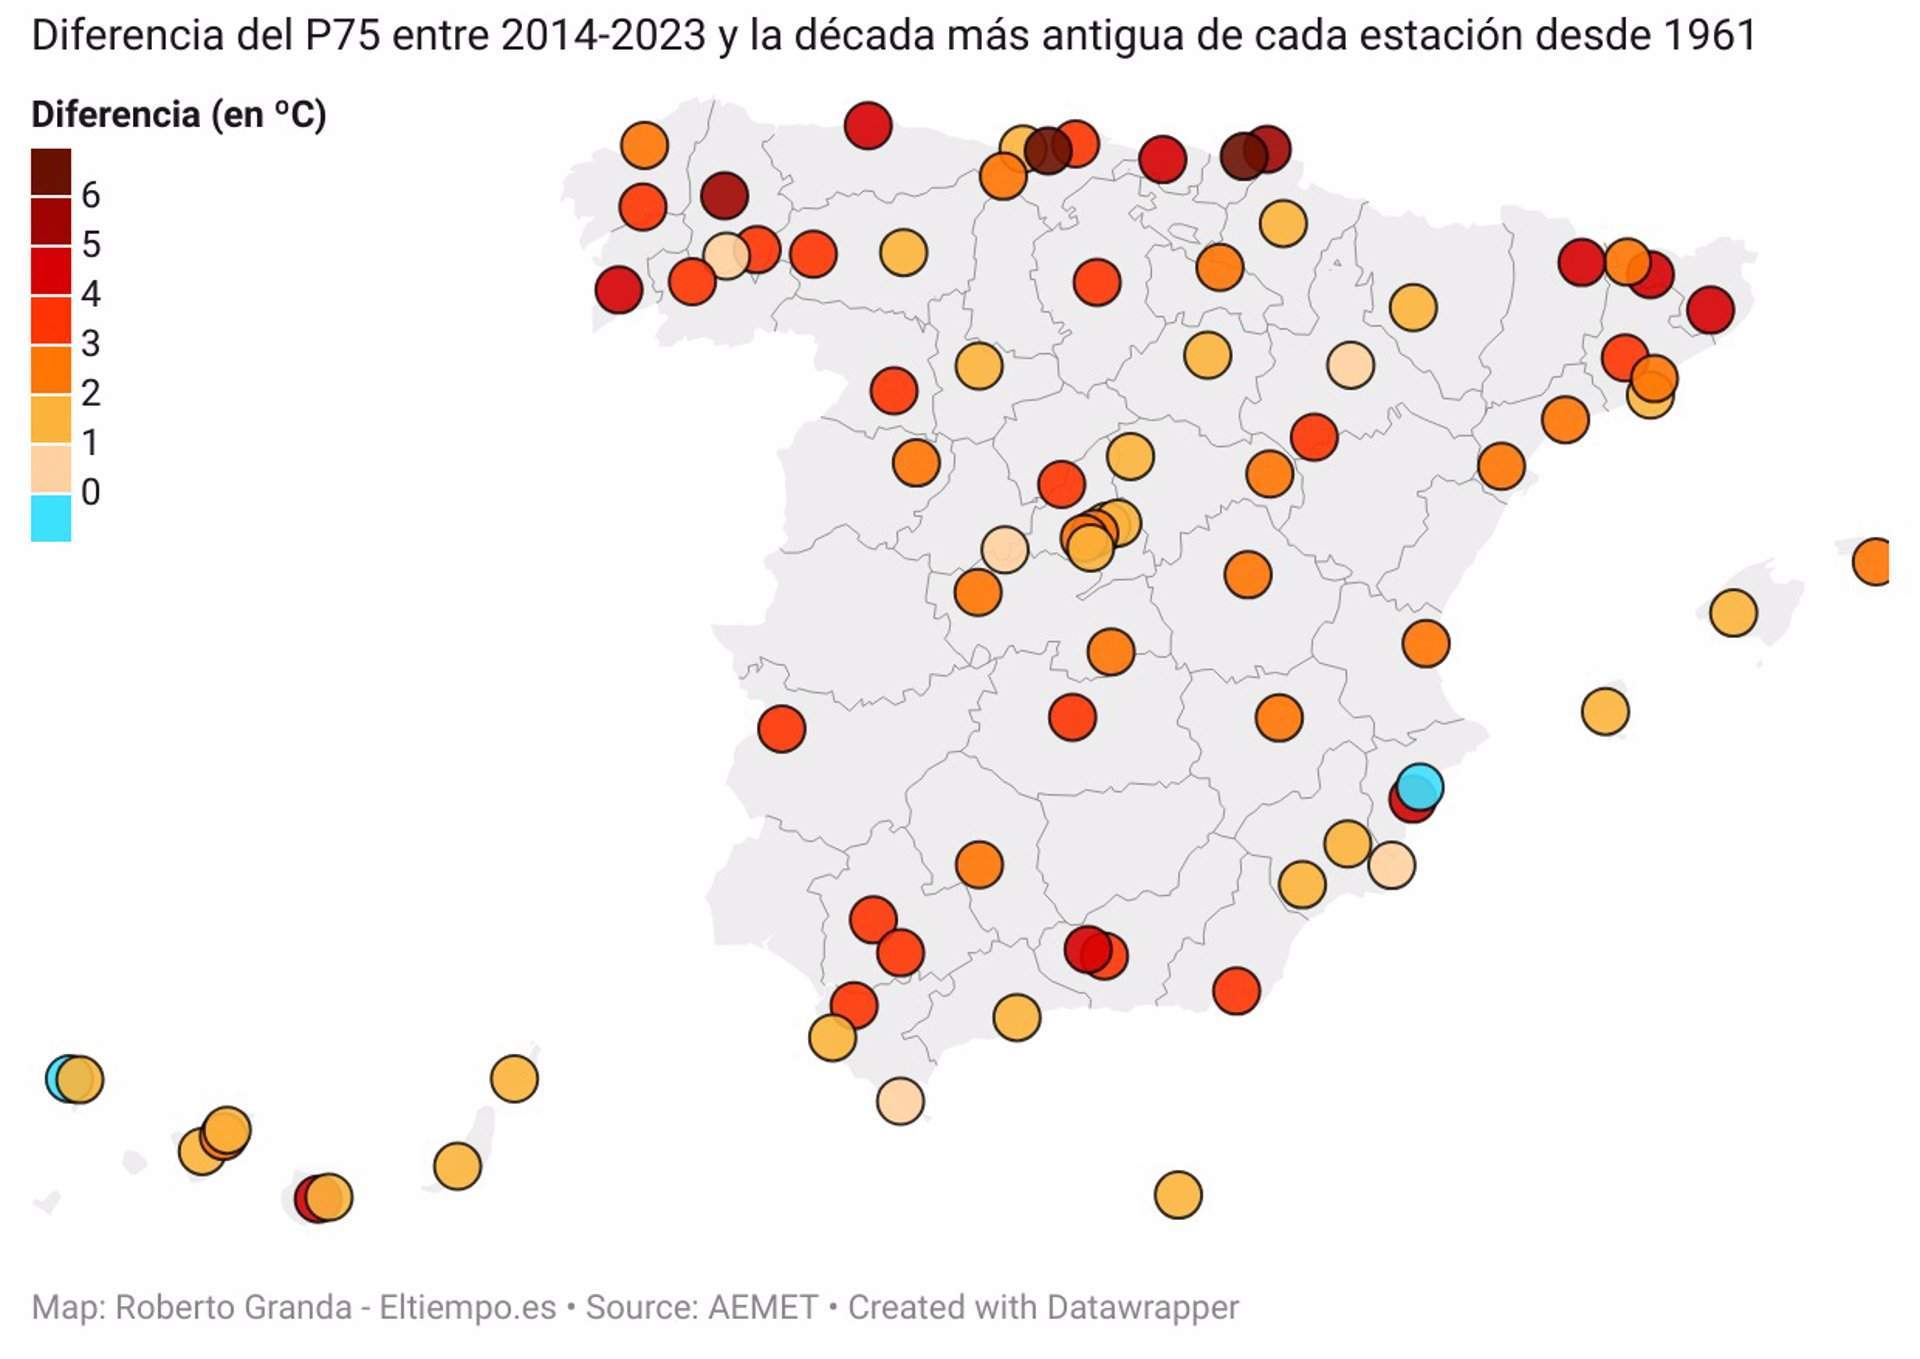 España registra un aumento de 2,5ºC en el umbral de día cálido en abril / Mapa: EP - ElTiempo